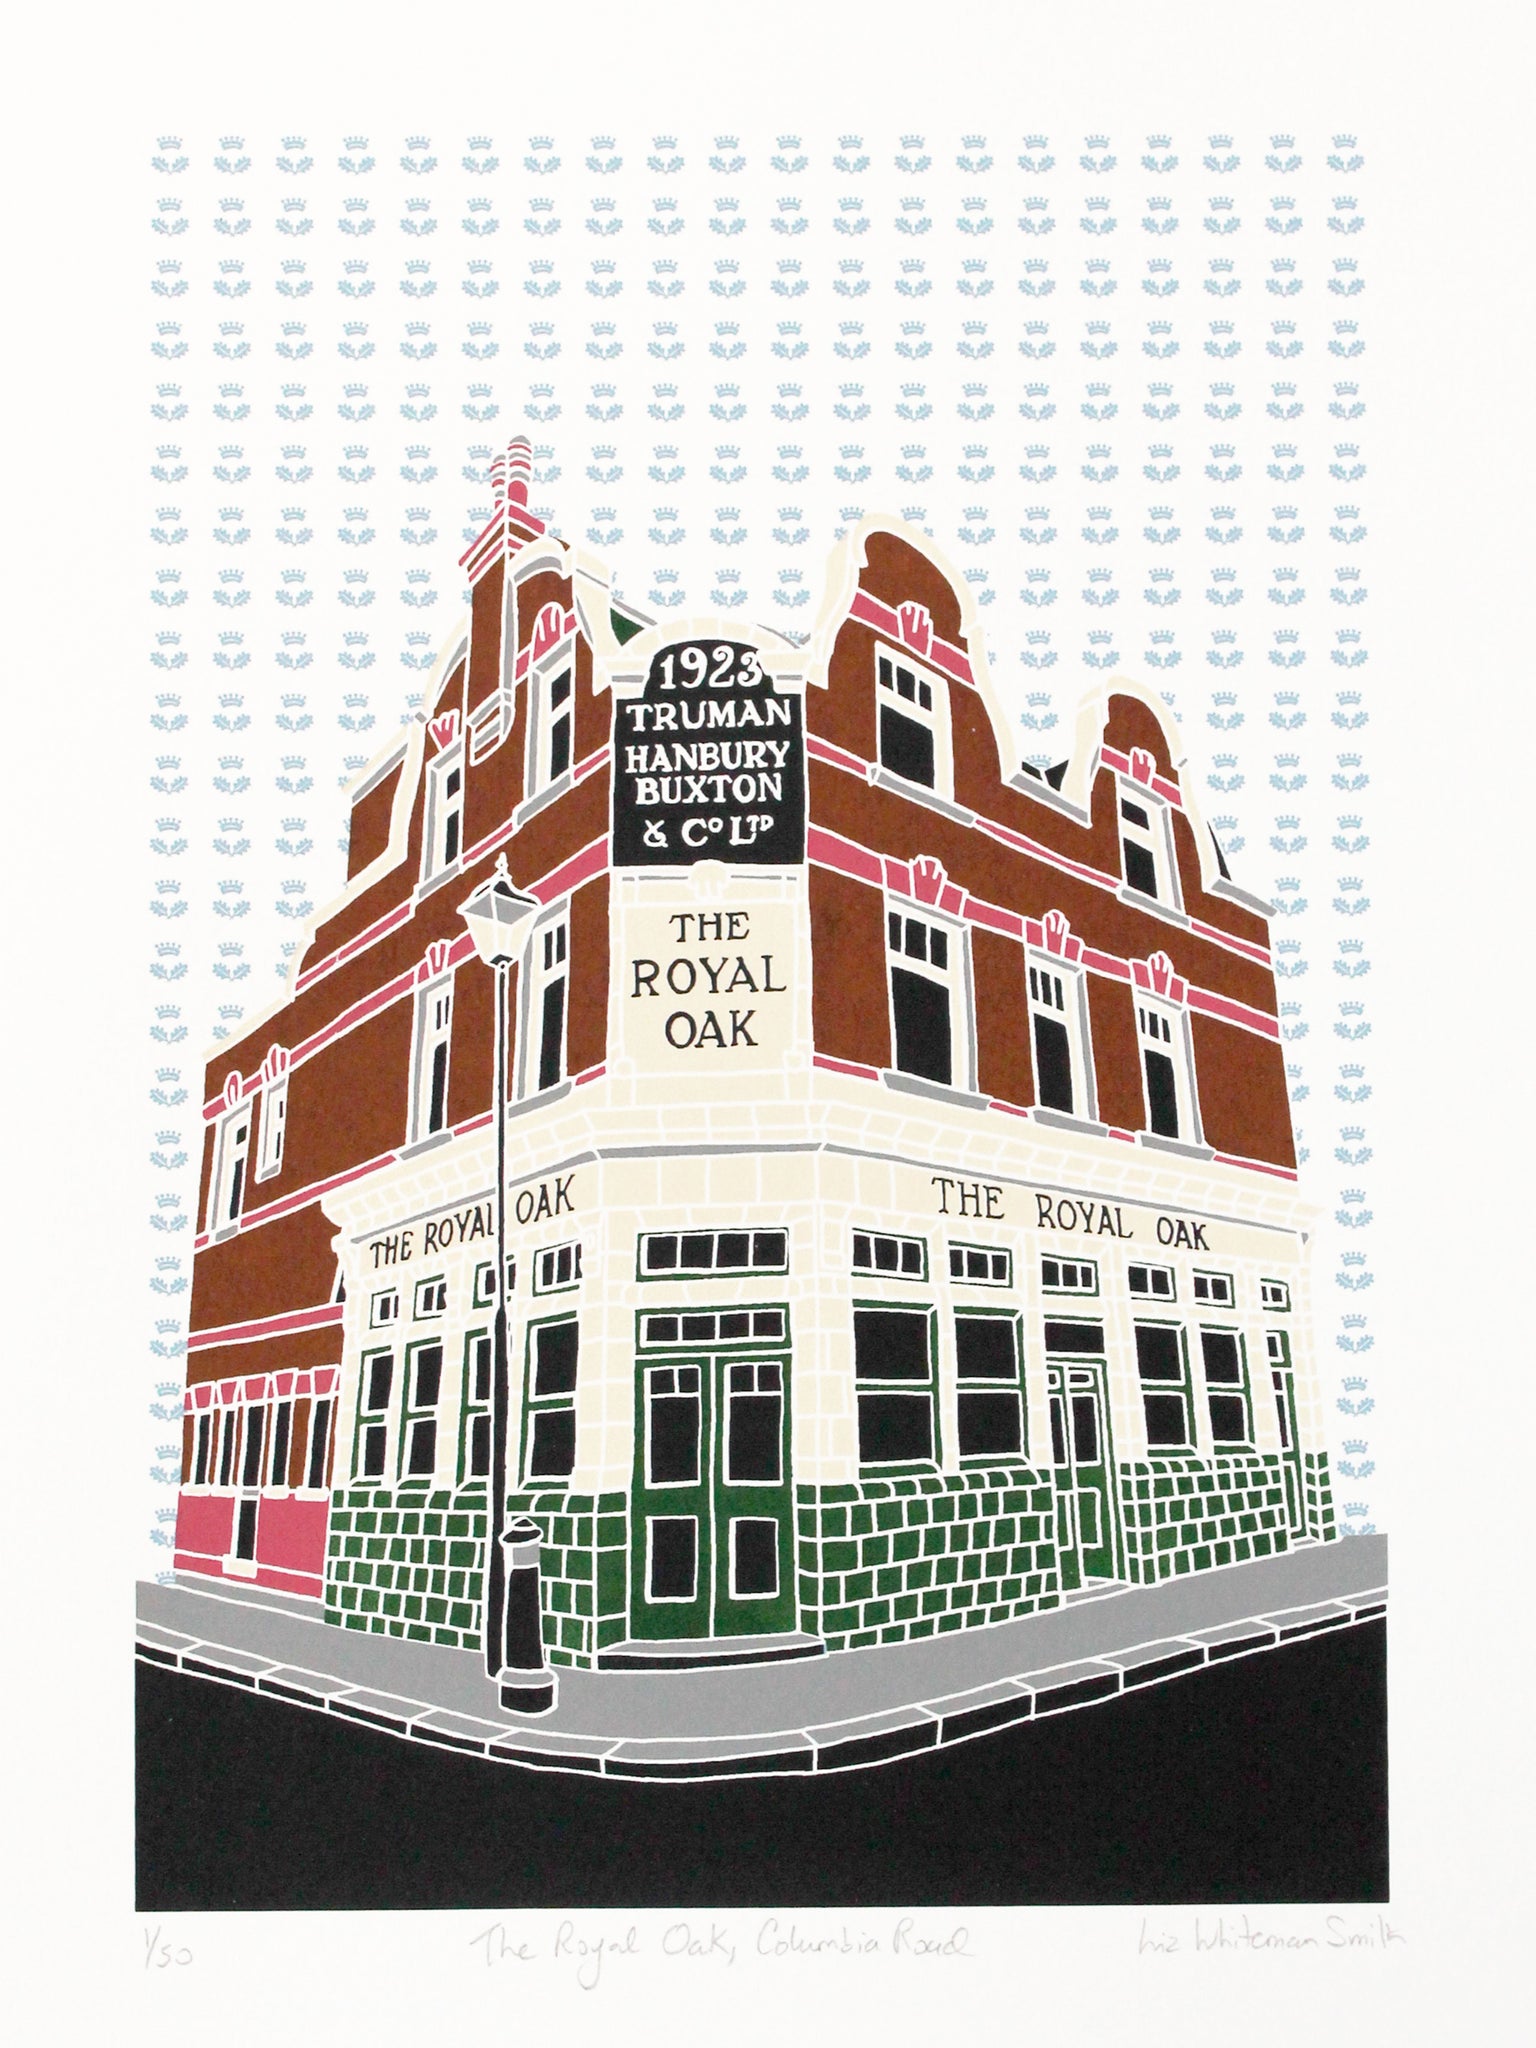 Royal Oak pub, Columbia Road screen print